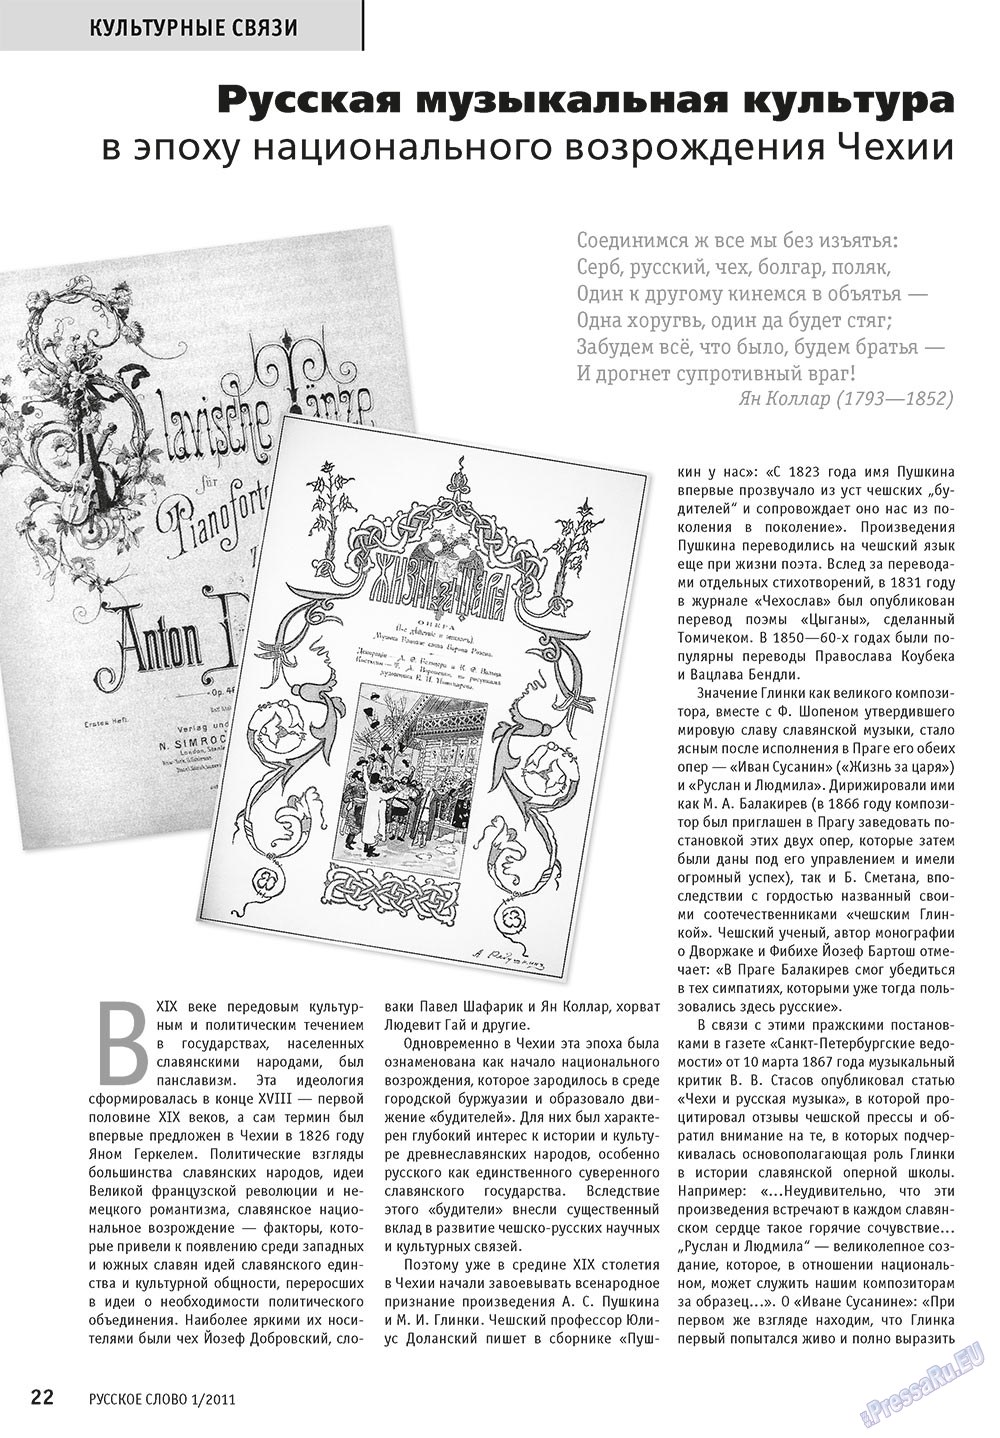 Русское слово, журнал. 2011 №1 стр.24